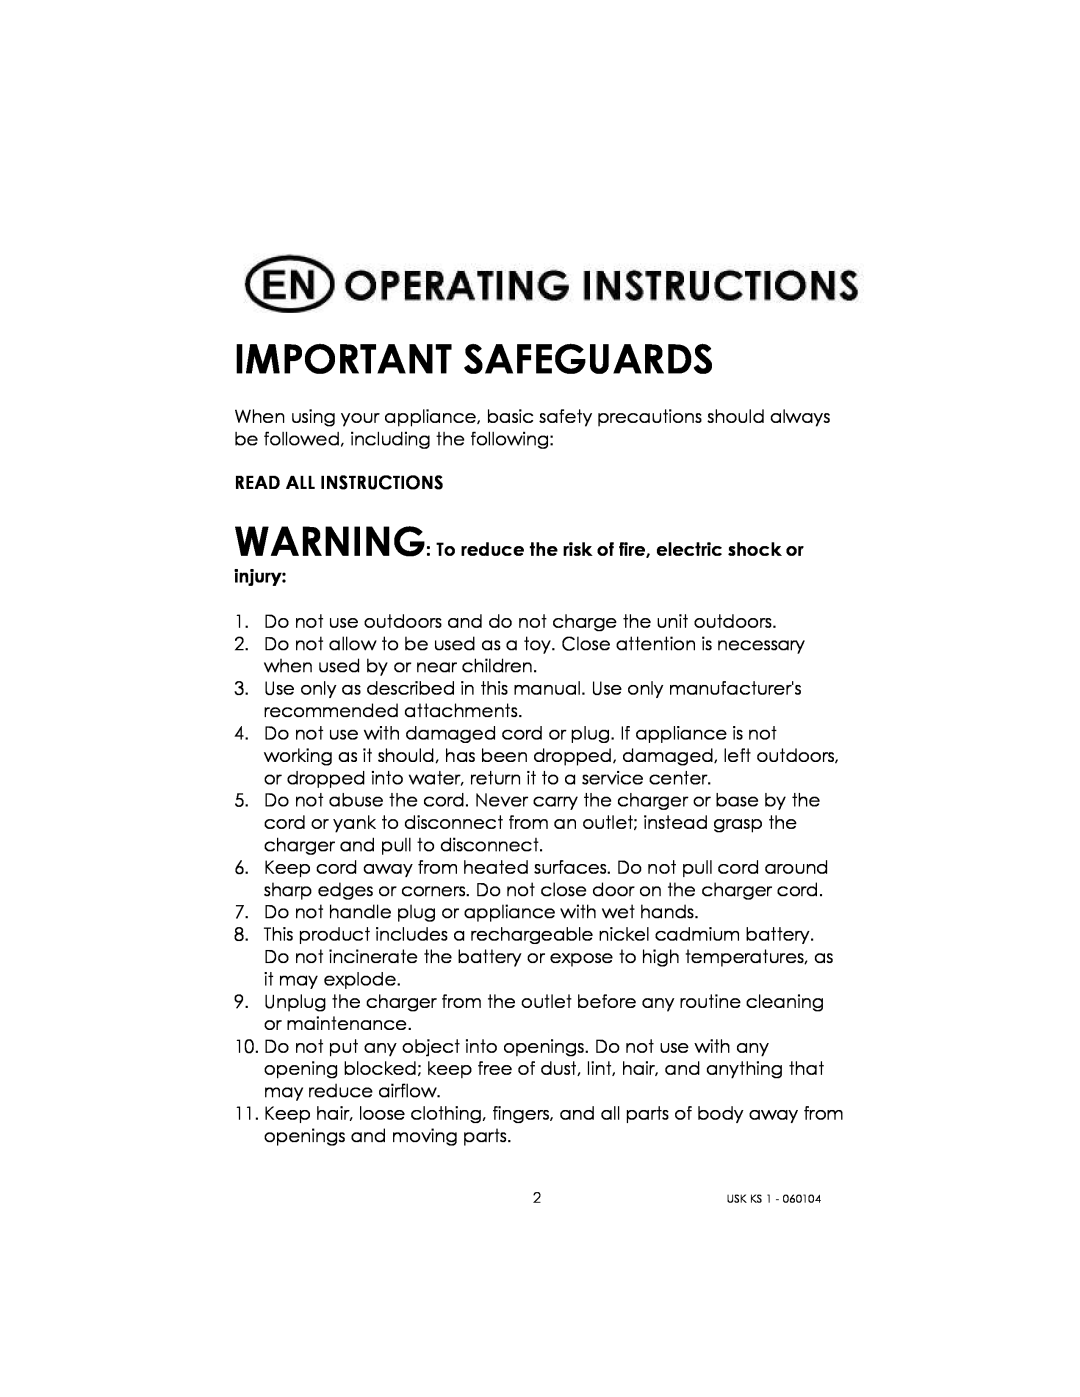 Kalorik USK KS 1 manual Important Safeguards 